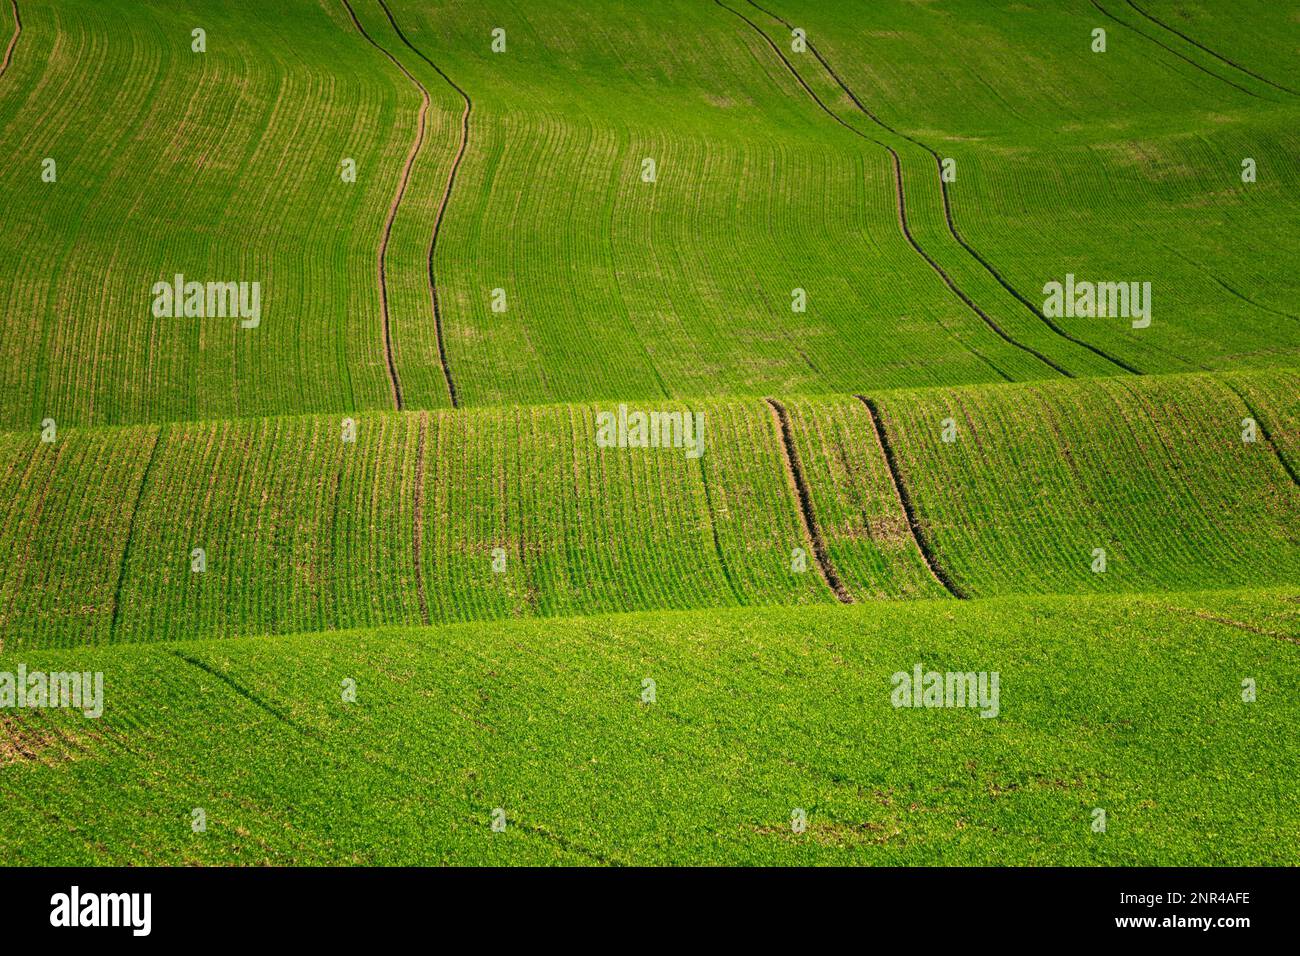 Mährische Landschaften mit welligen Feldern mit einer Fülle von Farben. Tschechische republik, Mährisch, Tschechische republik Stockfoto